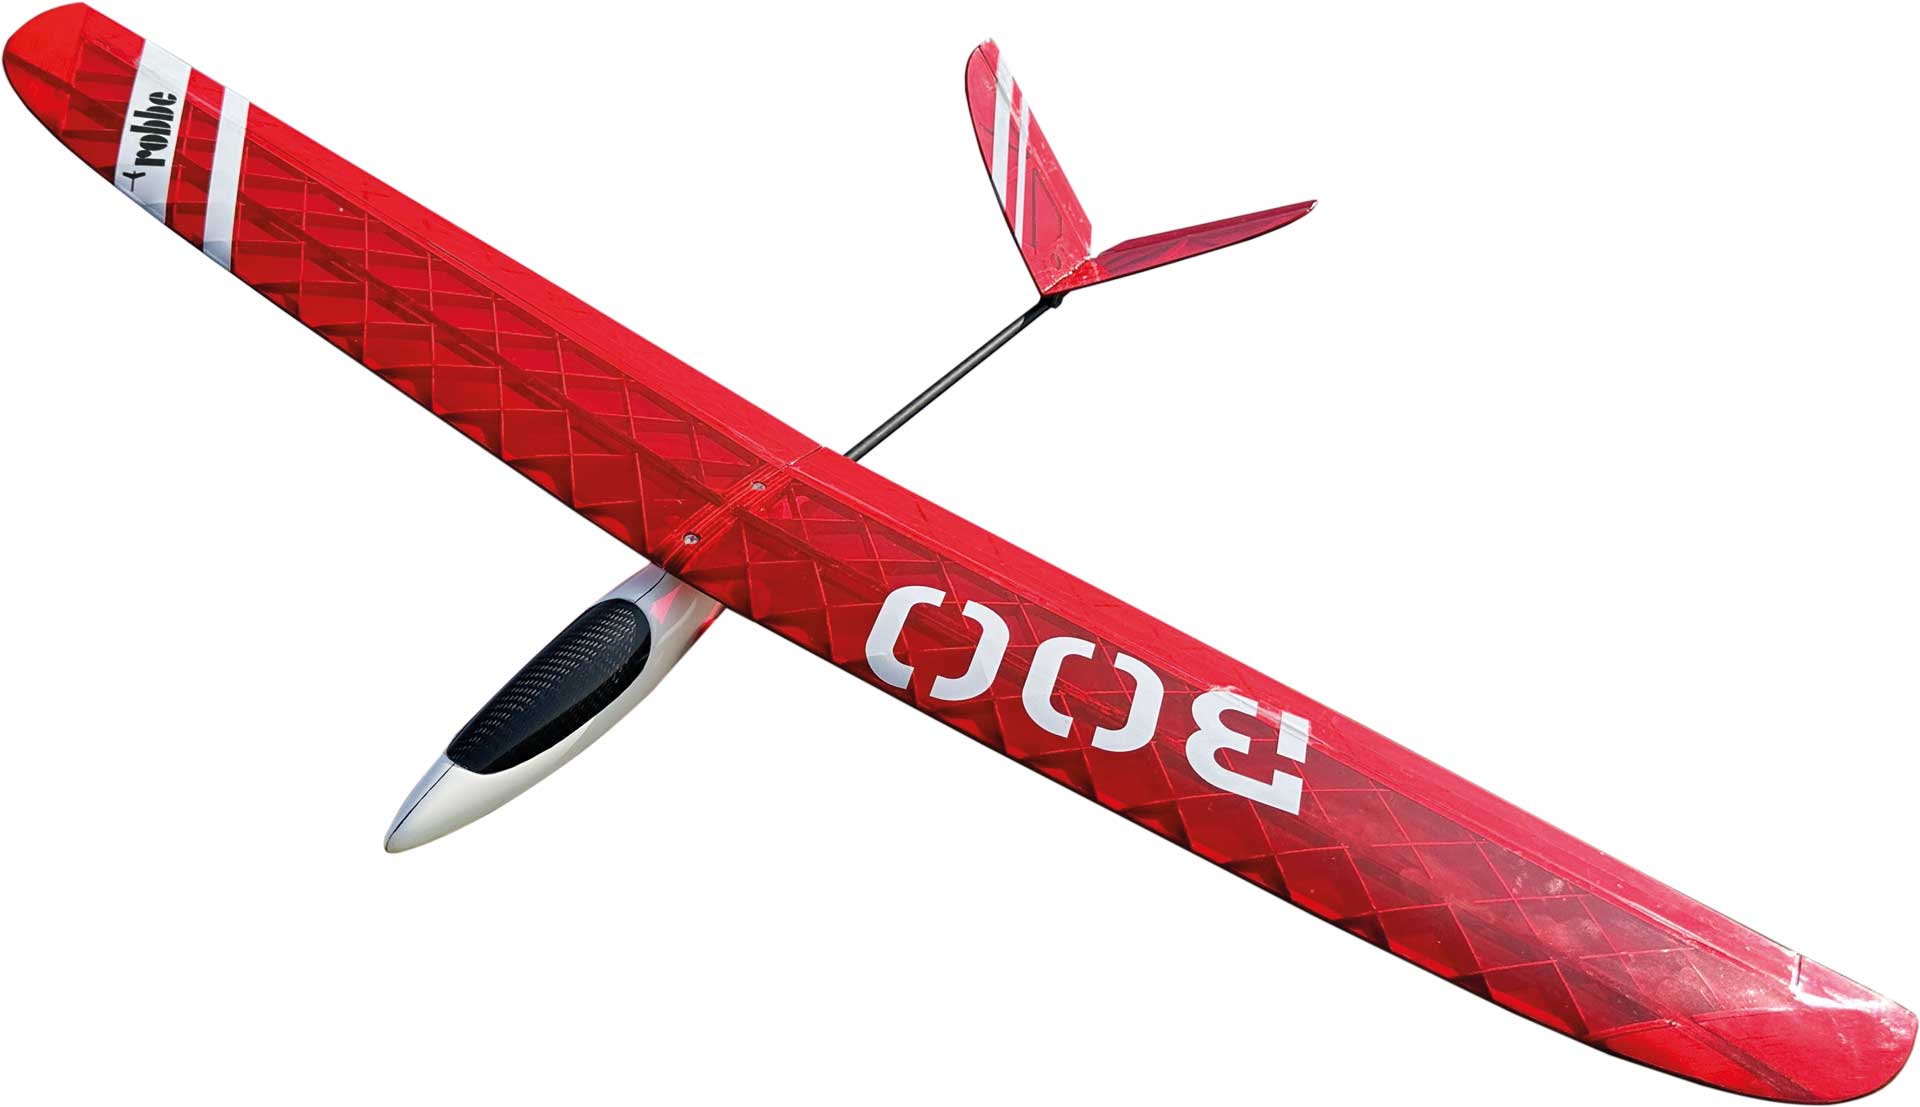 Robbe Modellsport Boo Slope Glider Holzbausatz in innovativer Sperrholzbauweise